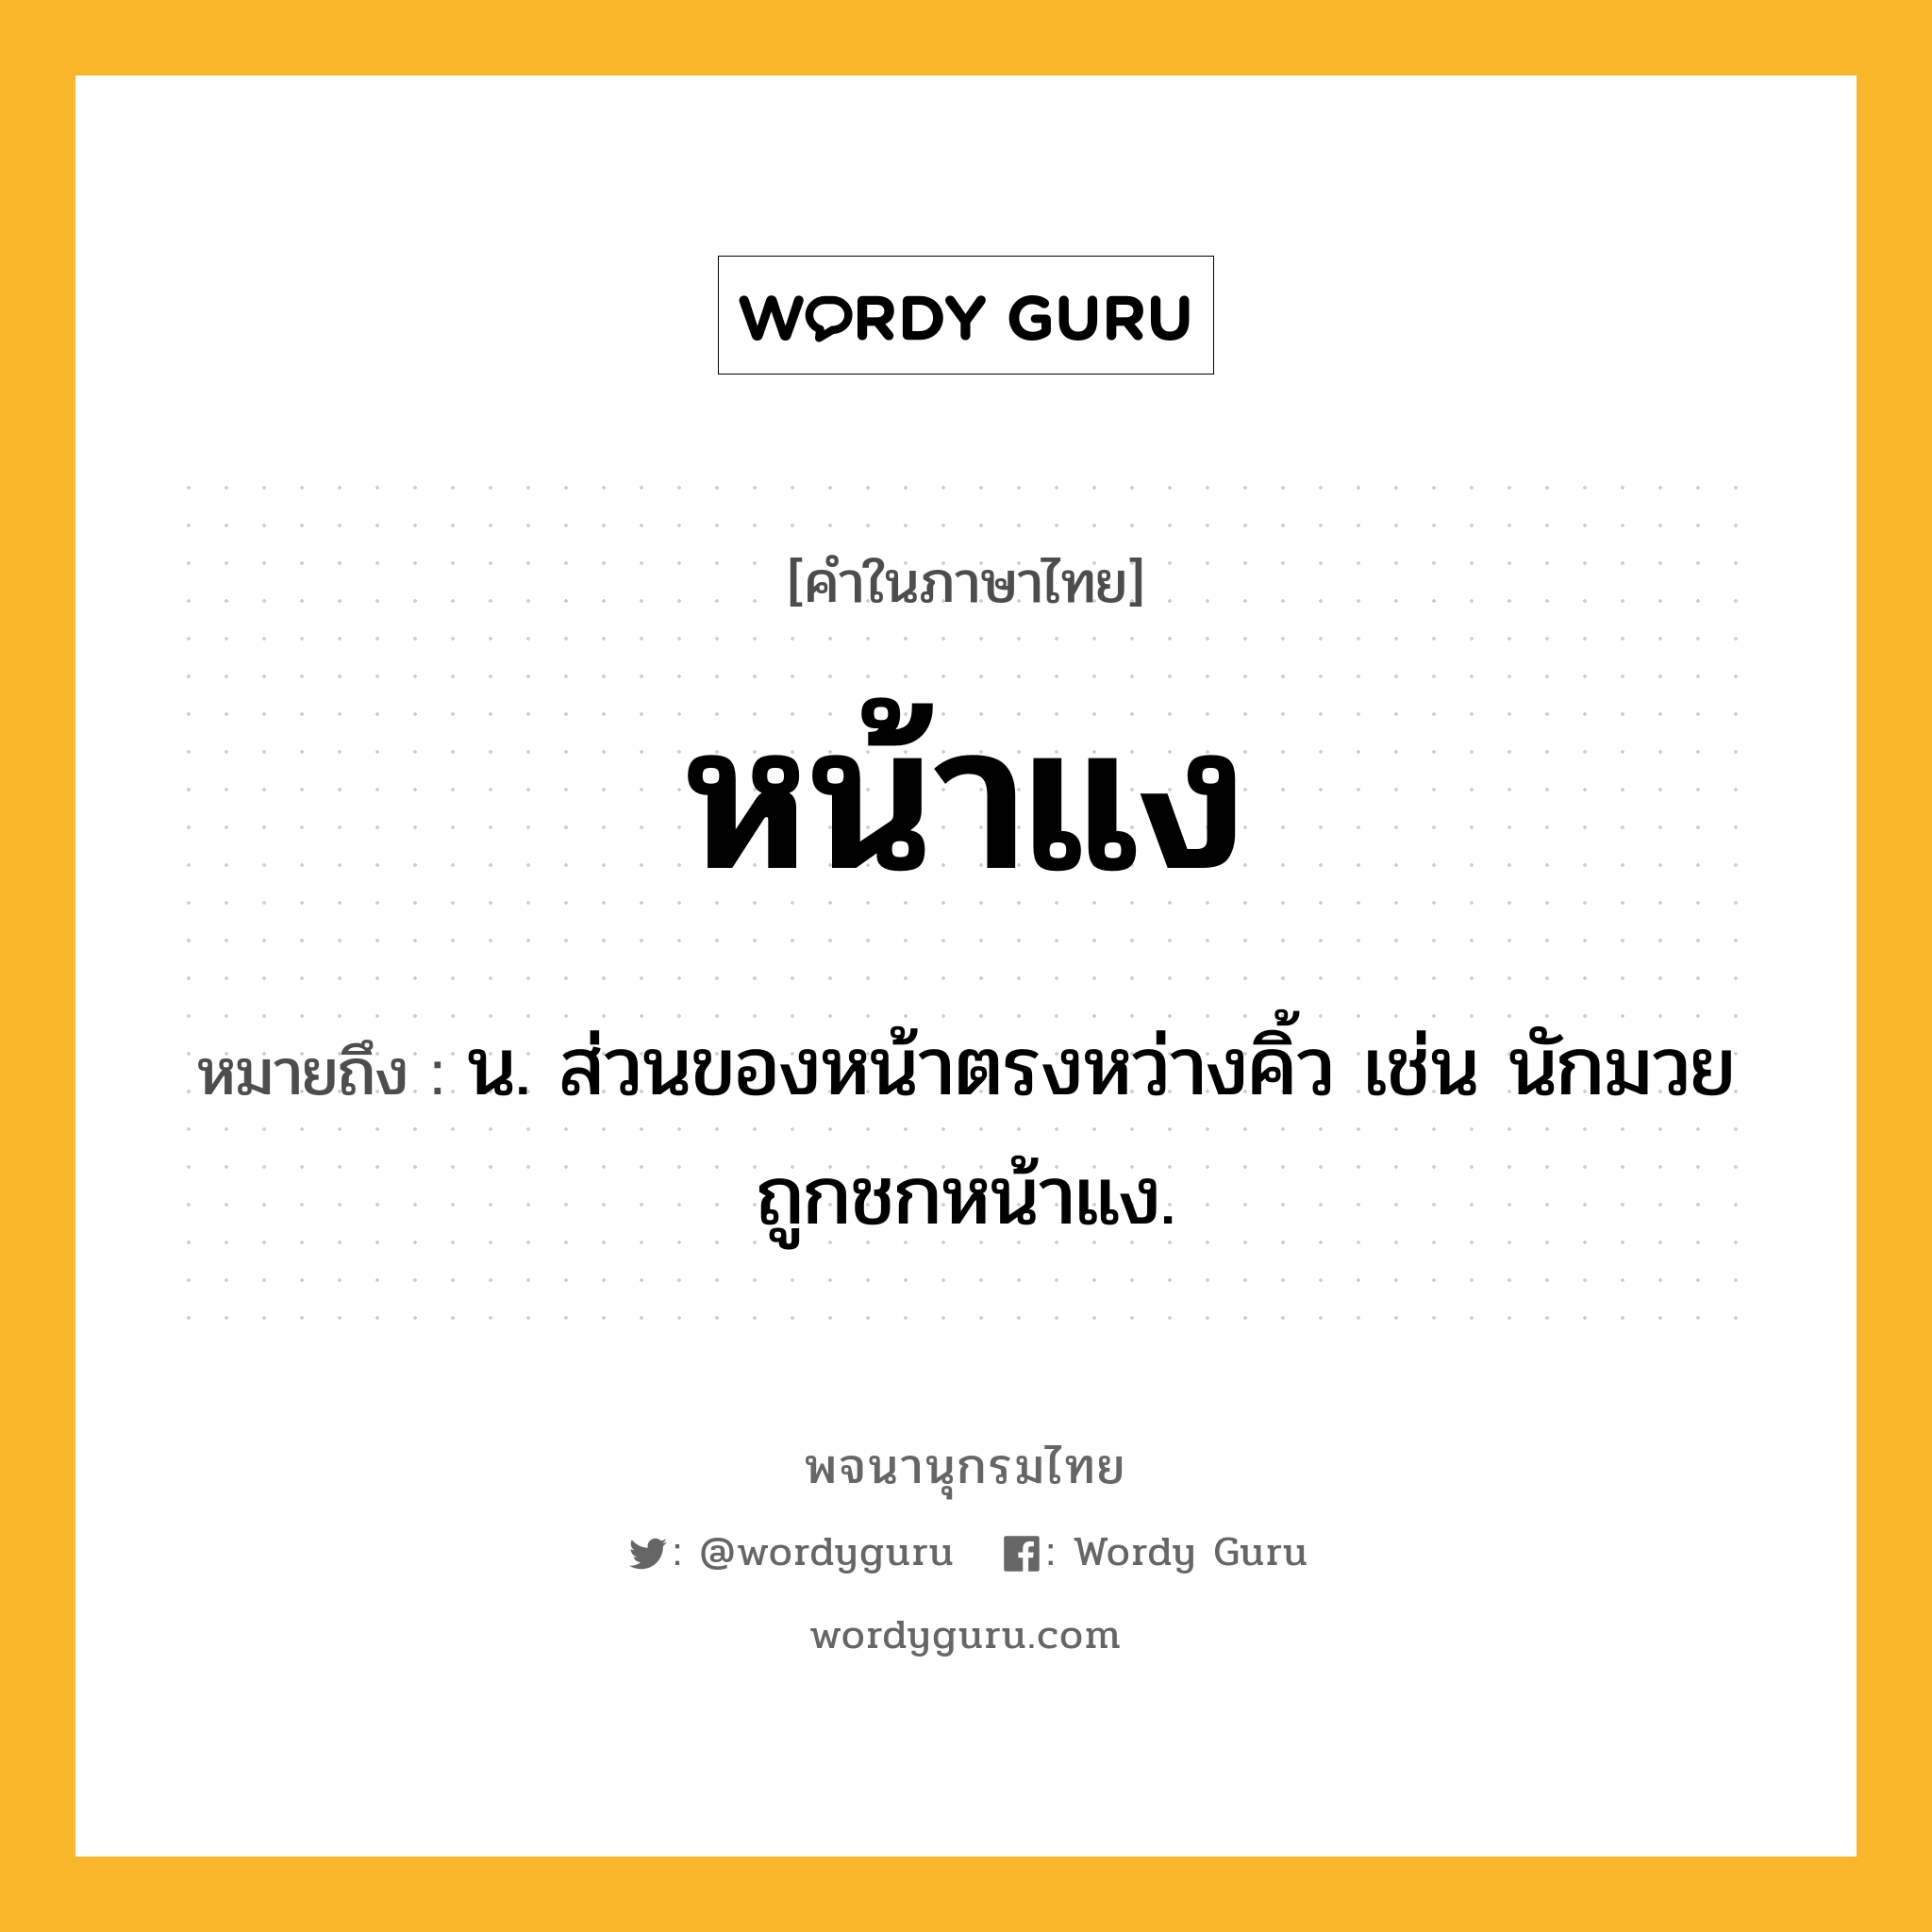 หน้าแง ความหมาย หมายถึงอะไร?, คำในภาษาไทย หน้าแง หมายถึง น. ส่วนของหน้าตรงหว่างคิ้ว เช่น นักมวยถูกชกหน้าแง.